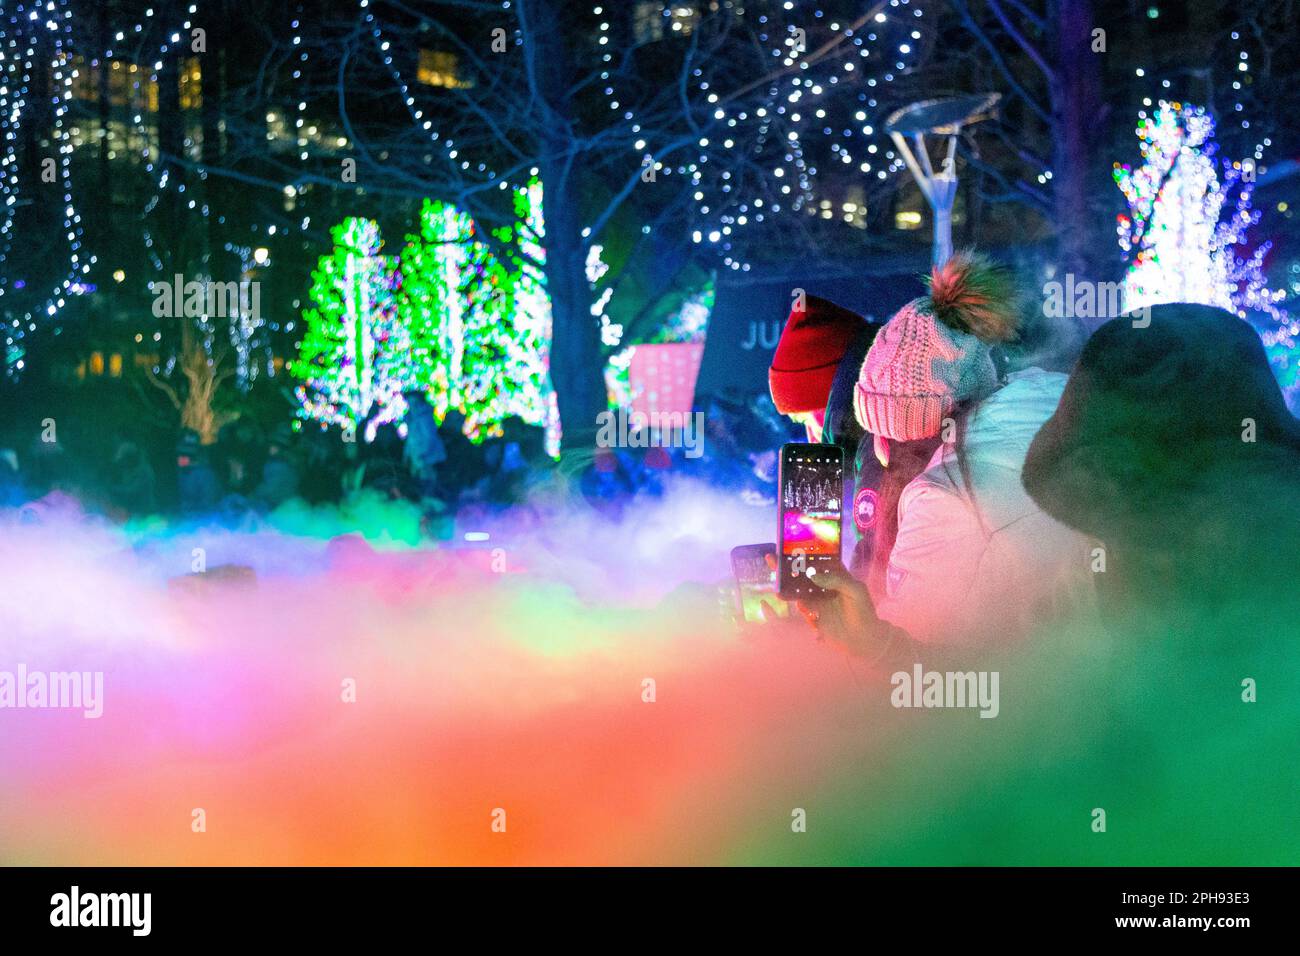 Menschen, die während der Canary Wharf Winter Lights 2023, London, Großbritannien, Fotos von der farbenfrohen Lichtinstallation an den Jubille Park Fountains machen Stockfoto